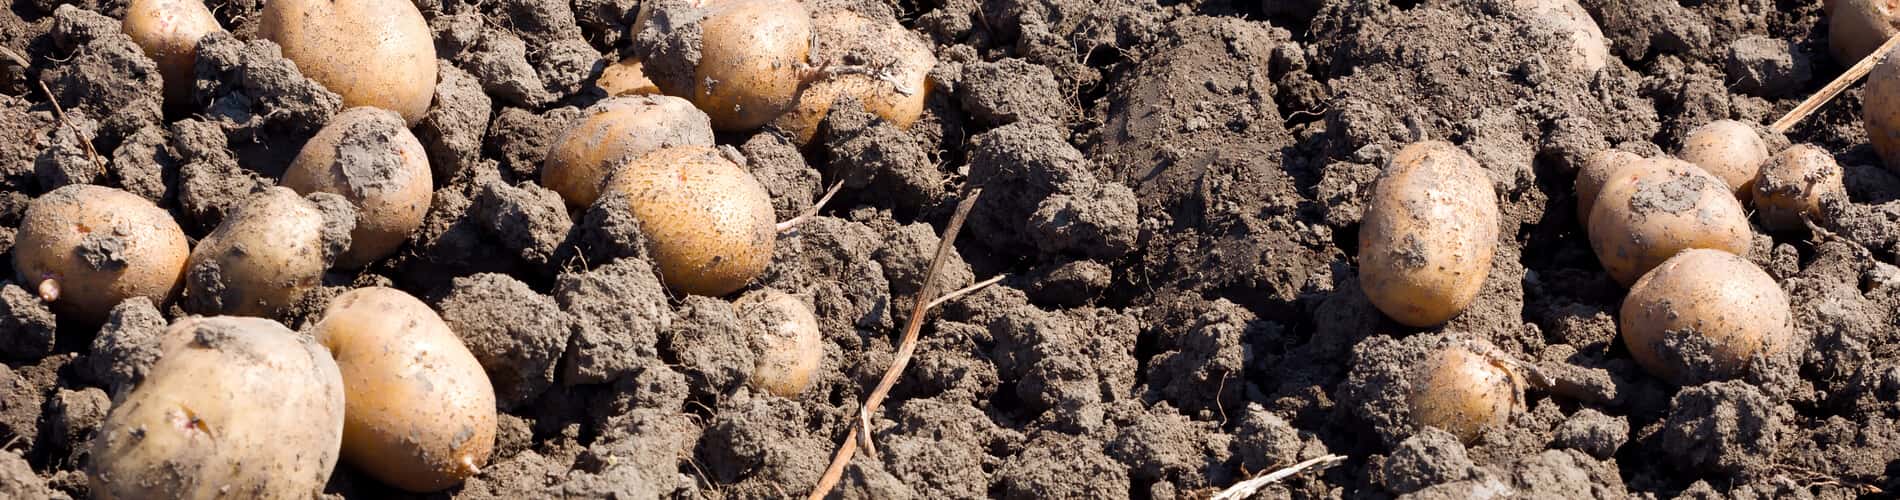 Kartoffeln im eigene Garten: Pflanzung, Pflege, Ernte und Lagerung